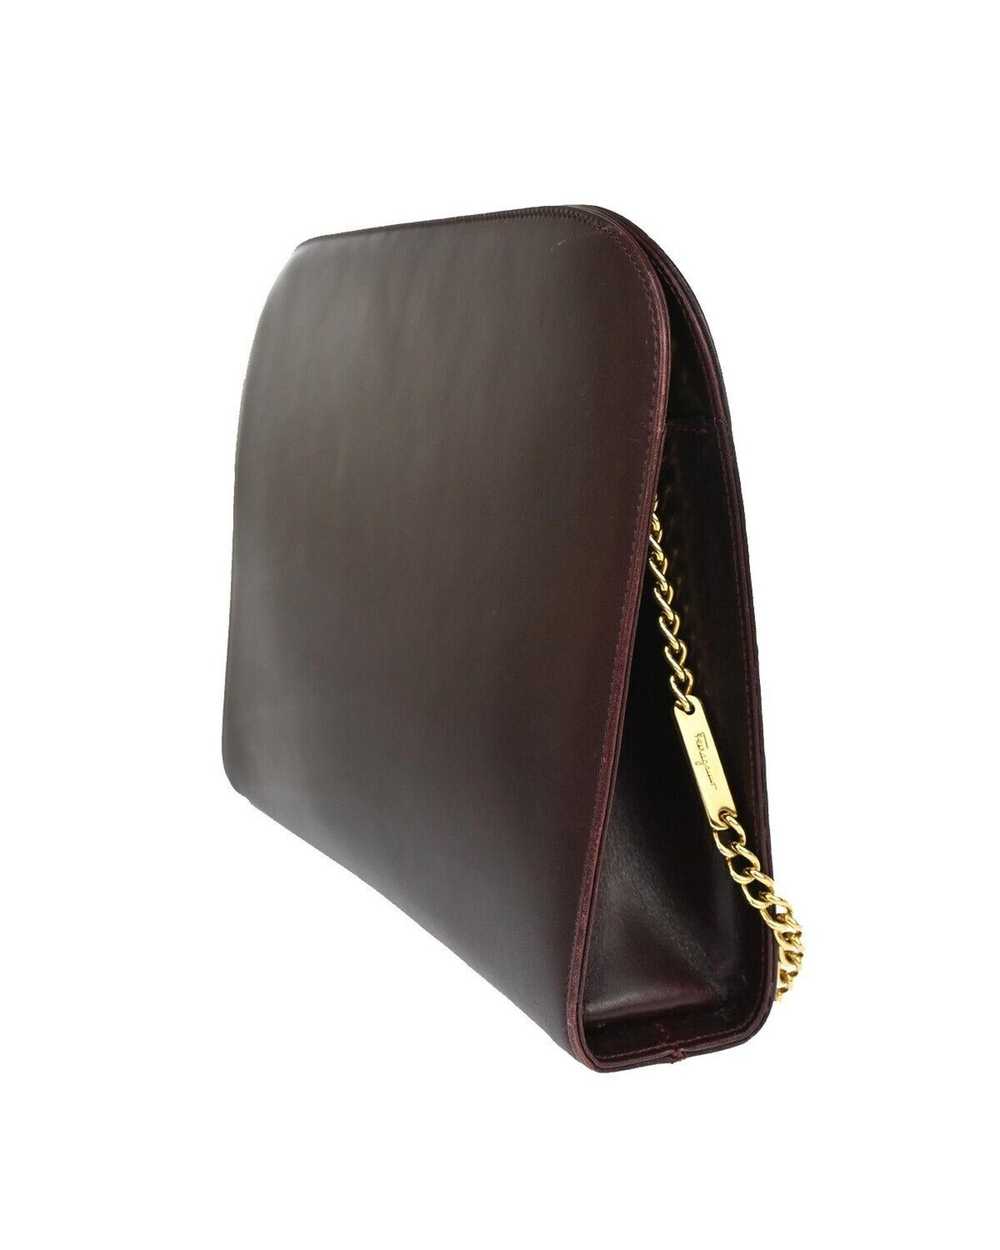 Salvatore Ferragamo Burgundy Leather Shoulder Bag - image 4